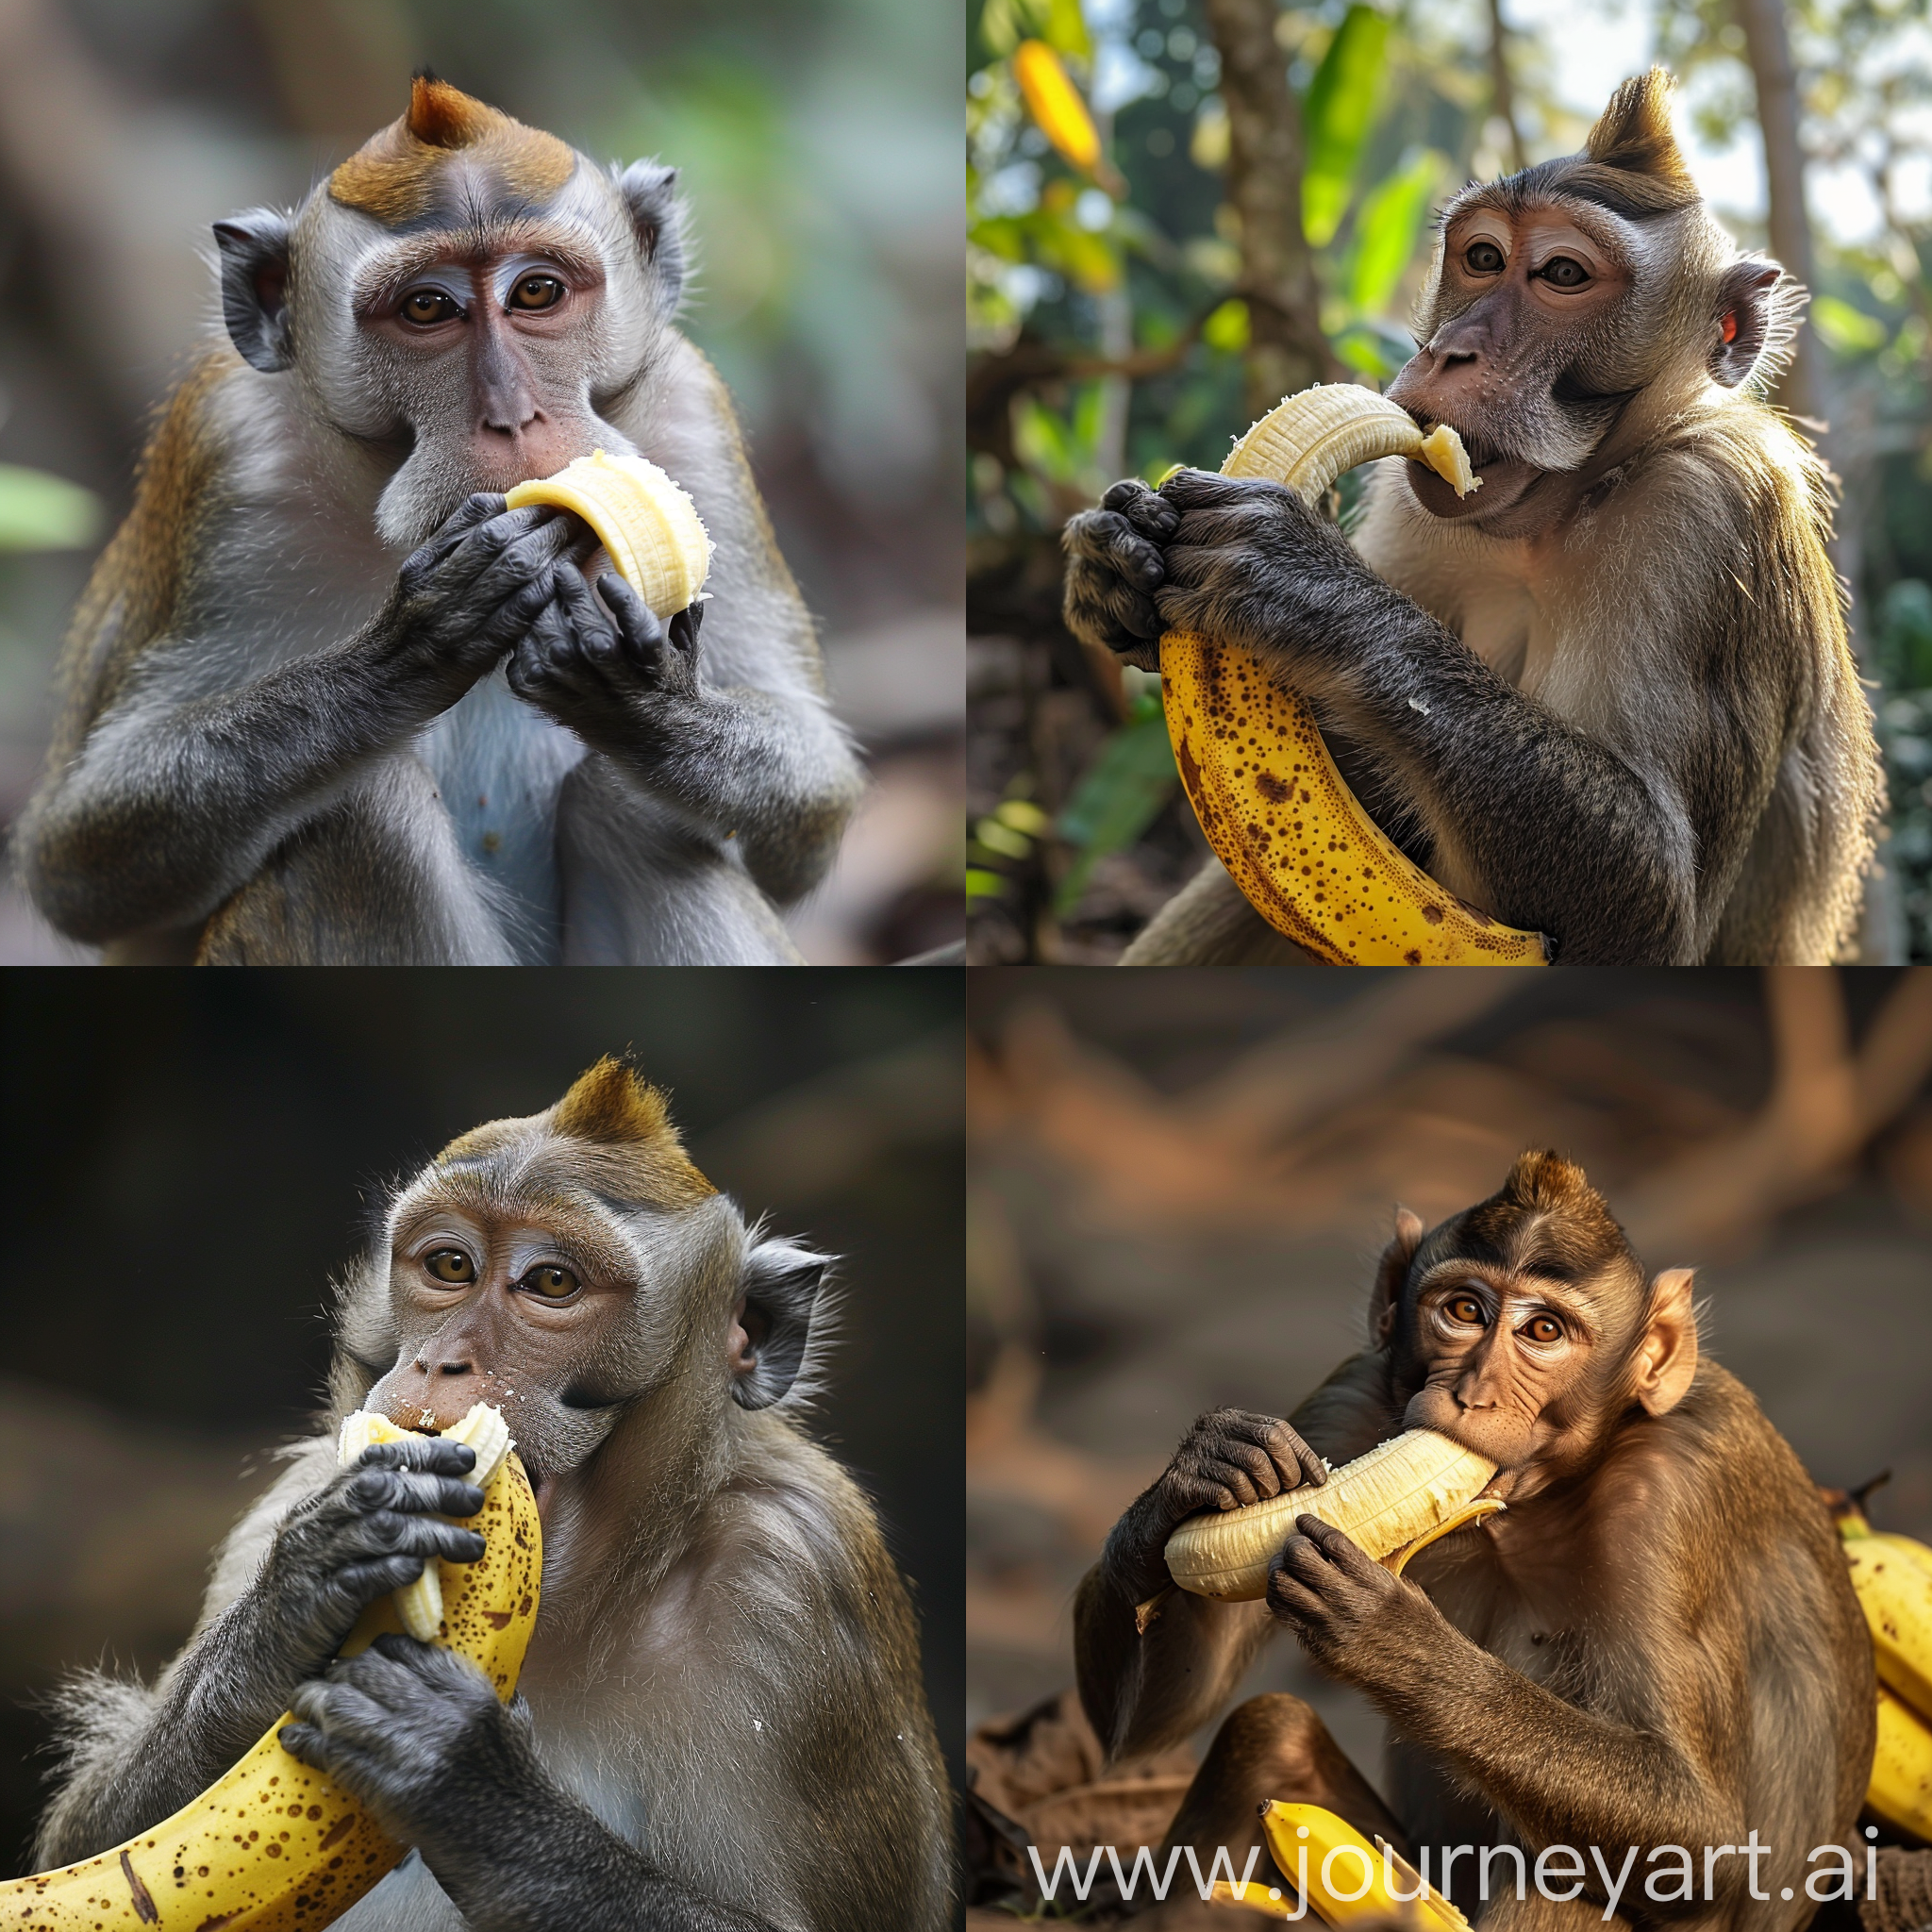 a monkey eating banana